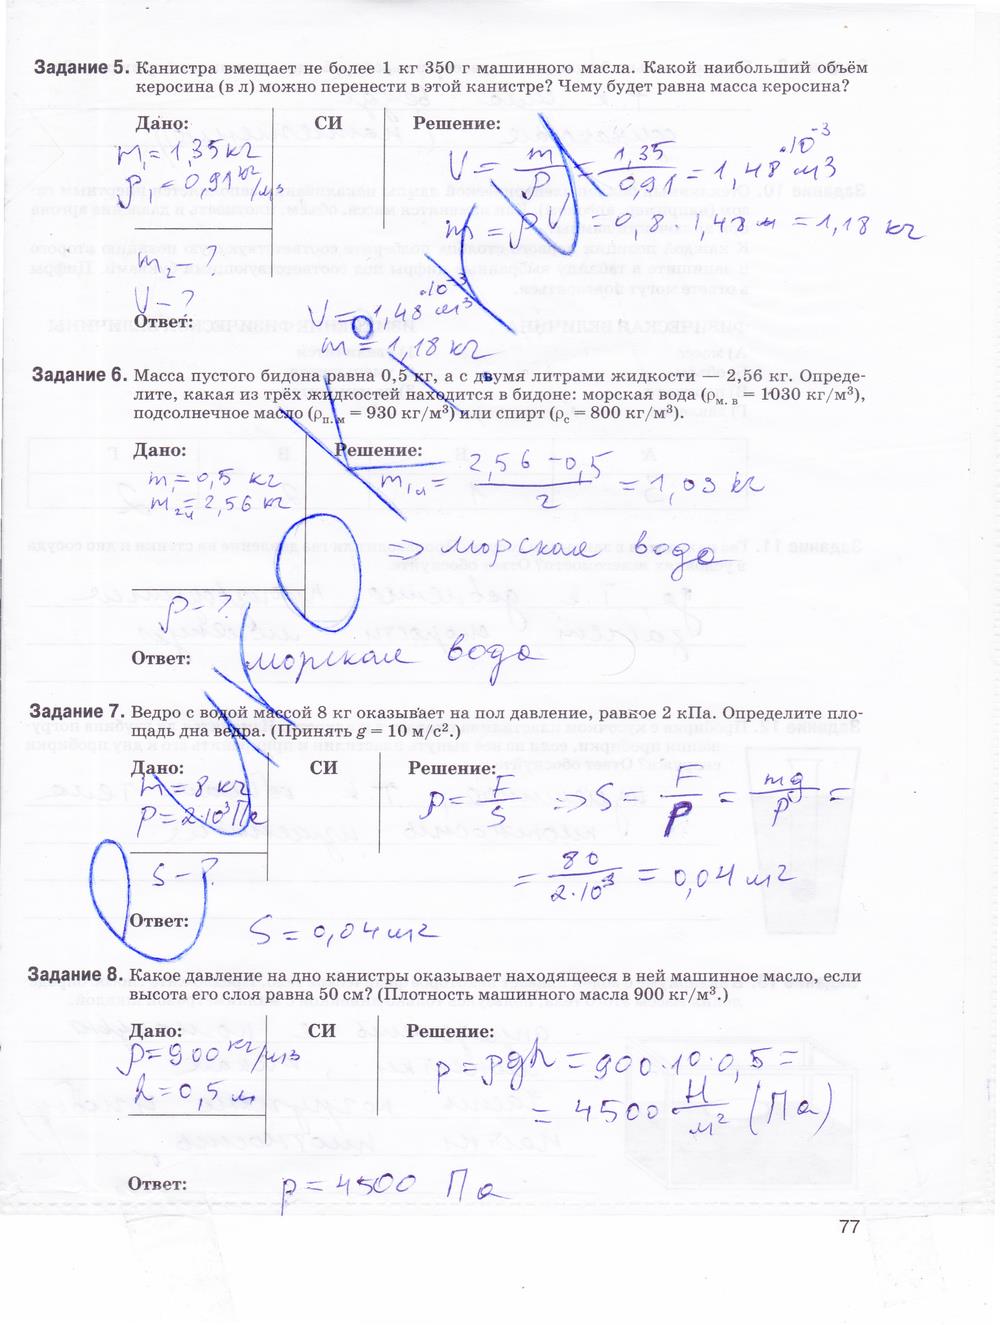 гдз 9 класс рабочая тетрадь страница 77 физика Гутник, Власова